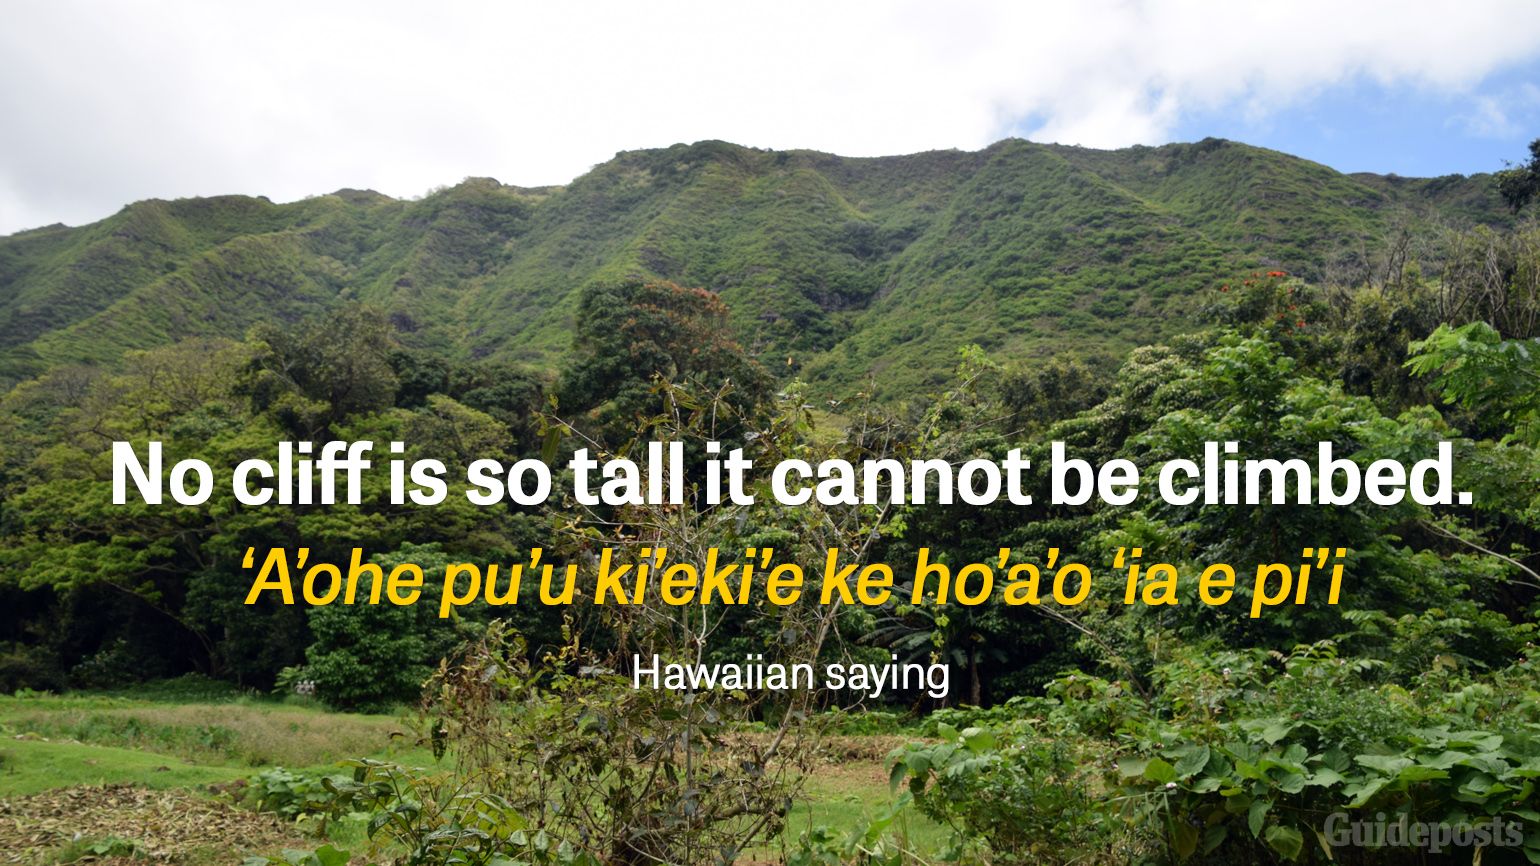 No cliff is so tall it cannot be climbed. ‘A’ohe pu’u ki’eki’e ke ho’a’o ‘ia e pi’i